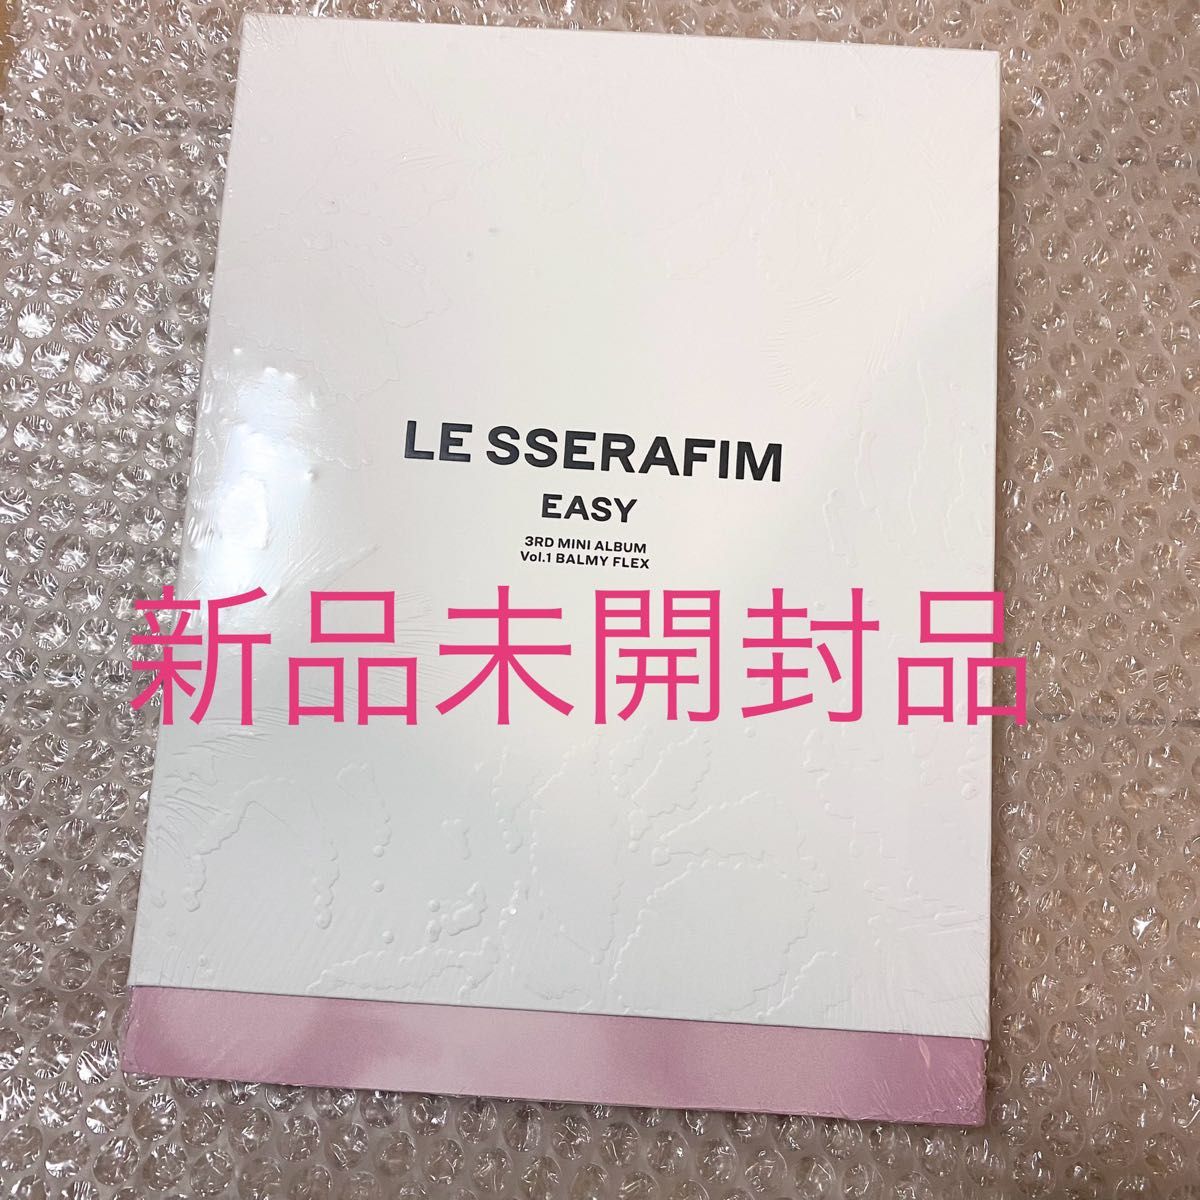 ルセラフィム EASY アルバム CD 新品未開封 LE SSERAFIM Vol.1 BALMY FLEX